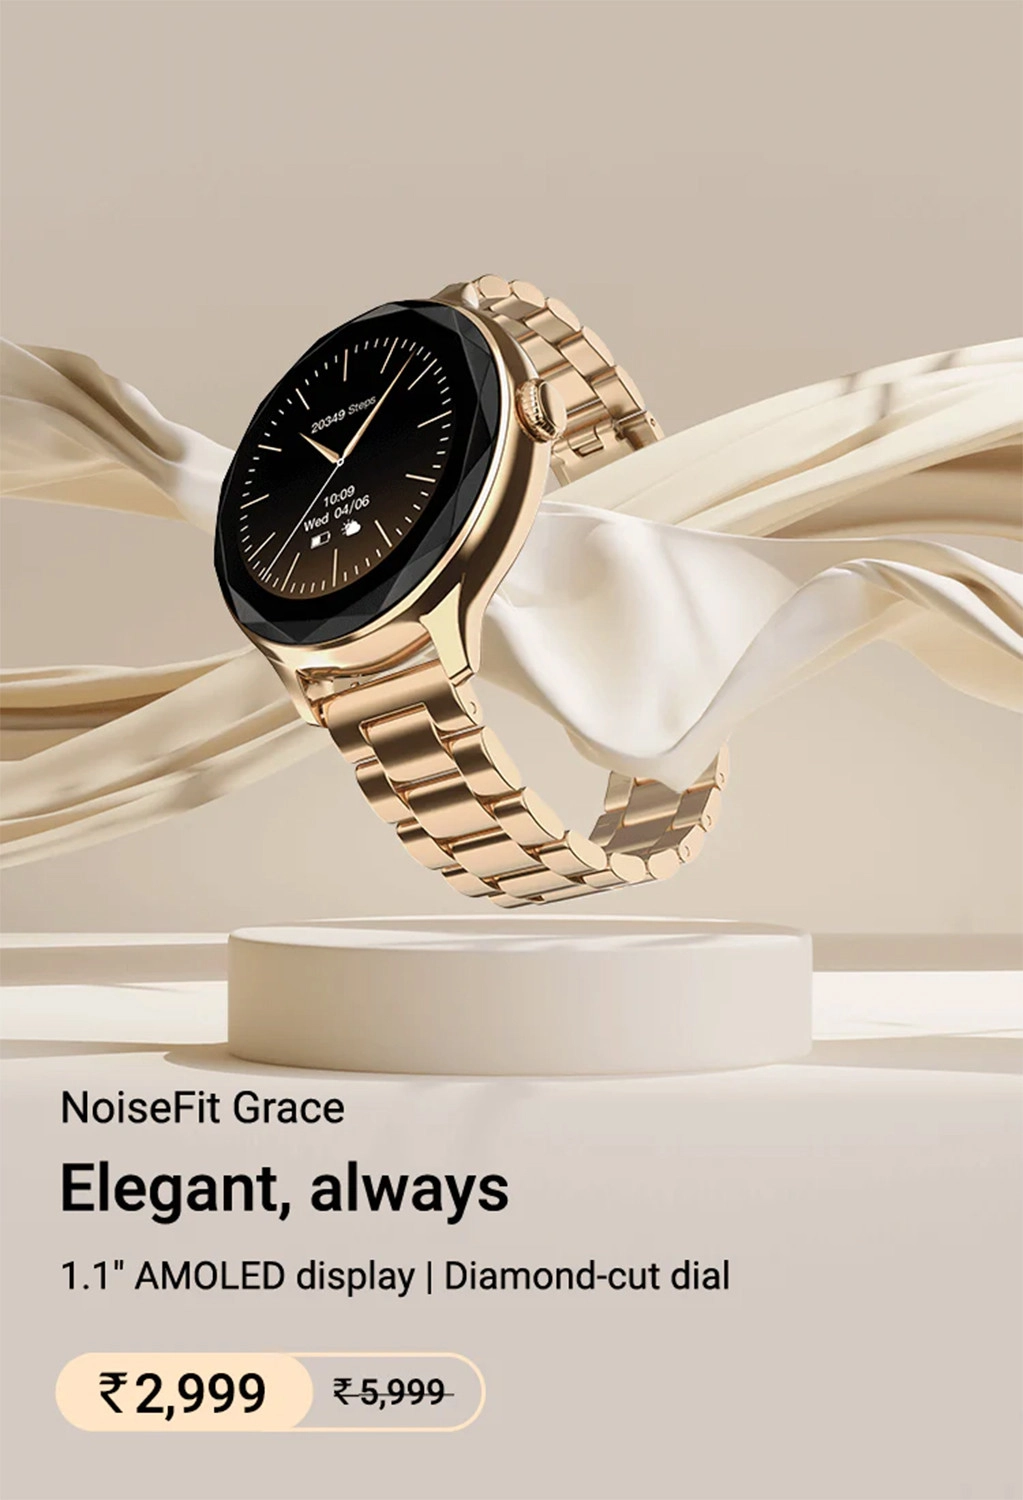 Đồng hồ NoiseFit Grace hiện có giá khởi điểm là 2.999 INR.